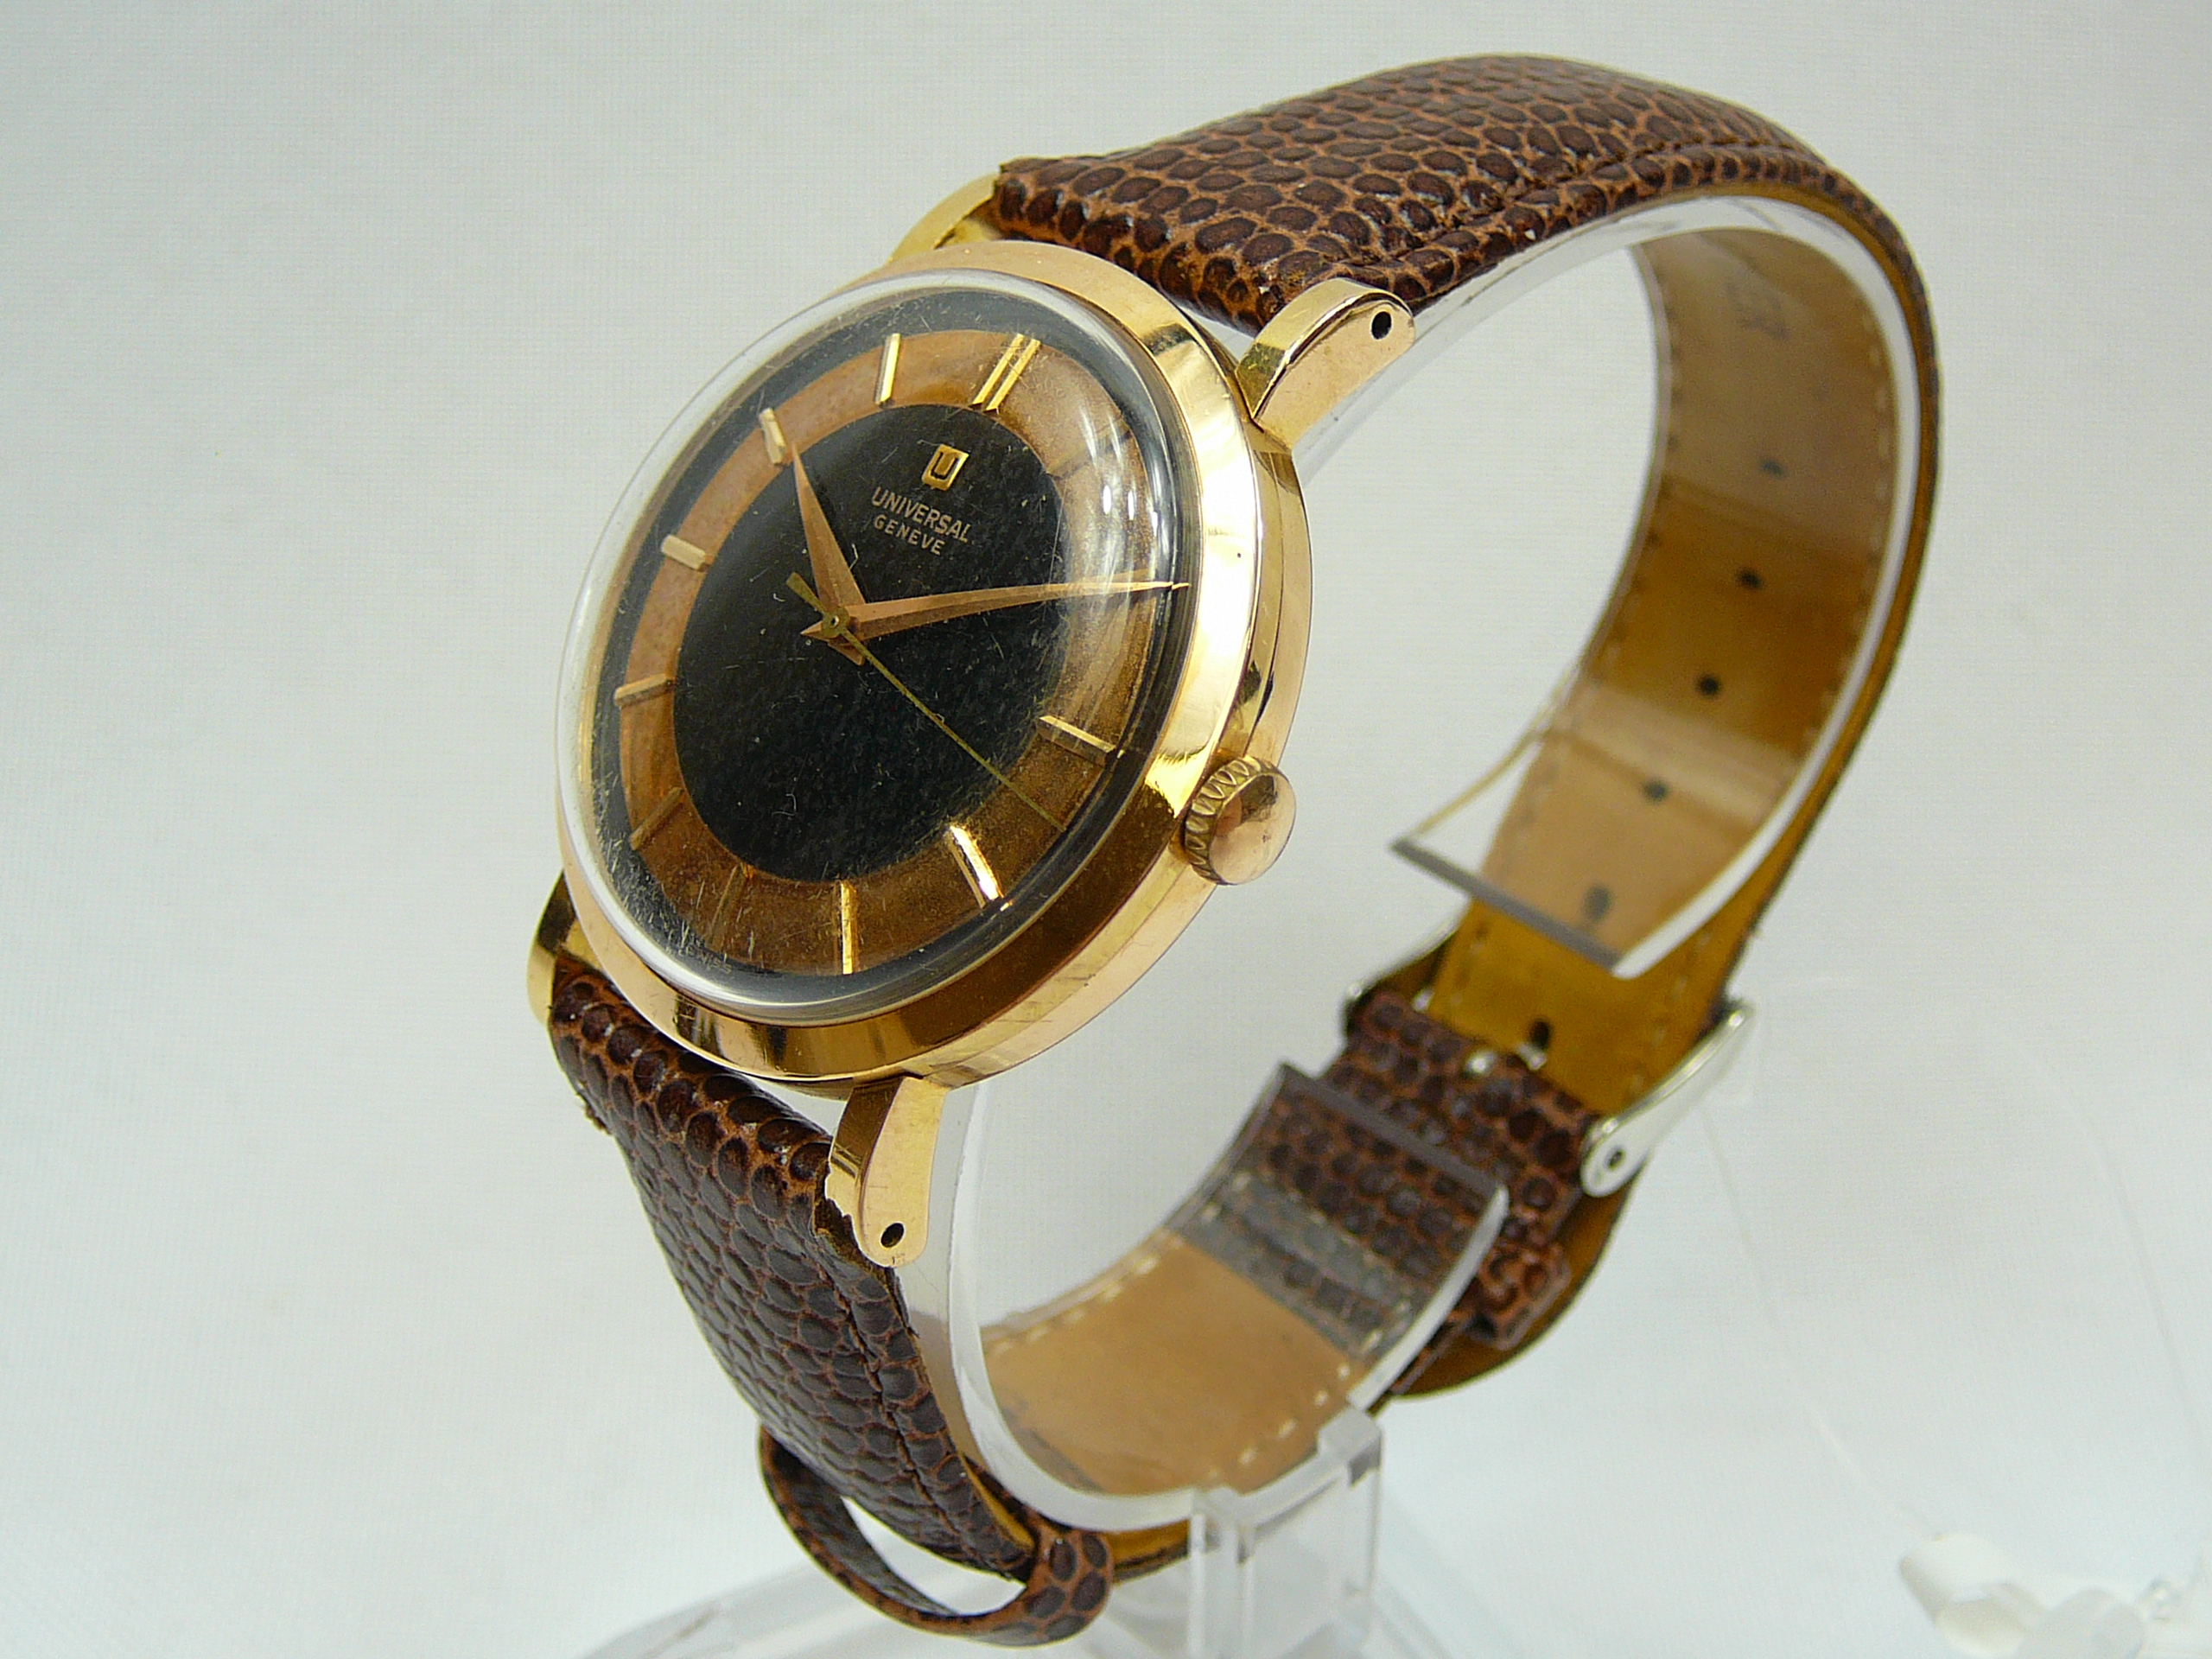 Gents Vintage Gold Universal Wrist Watch